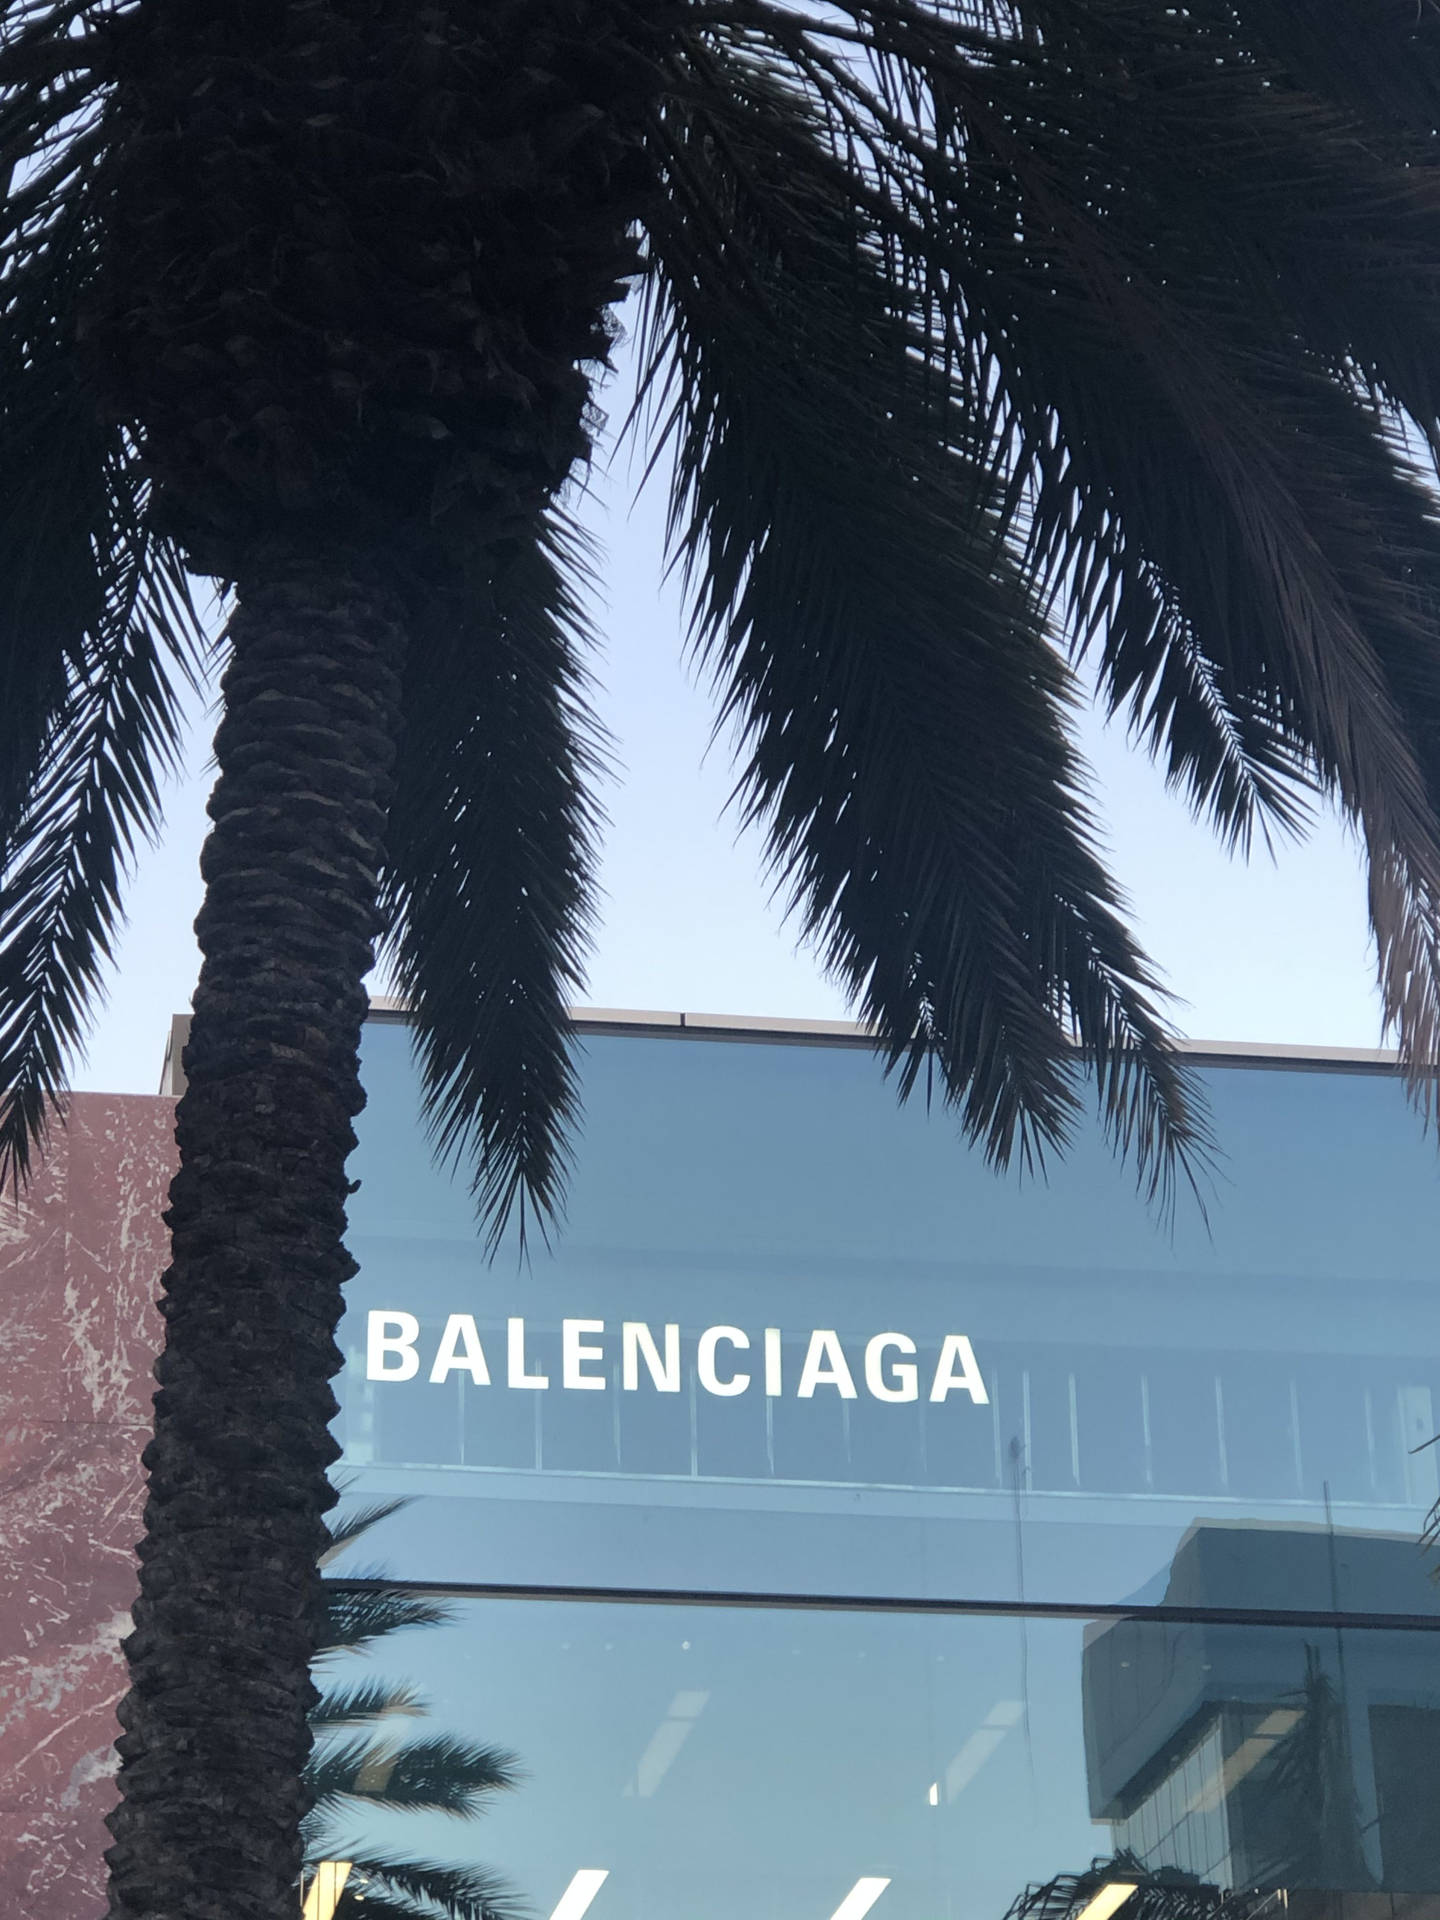 Balenciaga Office Building Wallpaper